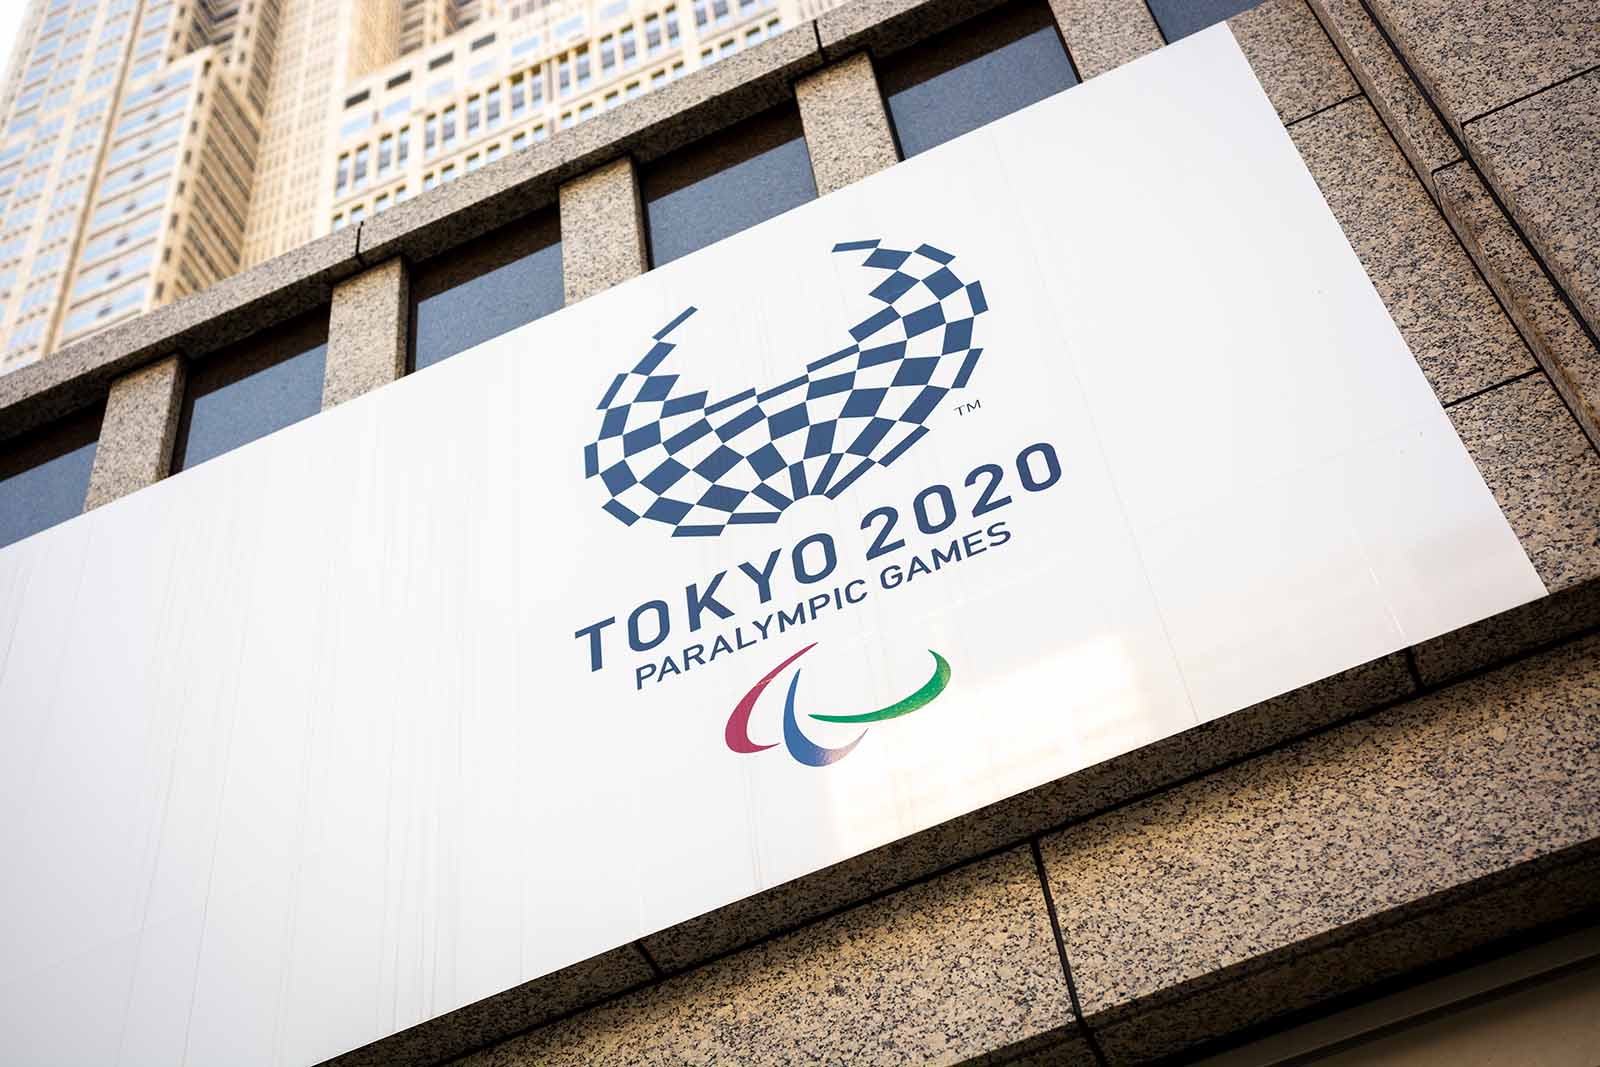 شعار الألعاب البارالمبية في طوكيو 2020. &quot;التقريب بين الرياضيين من مختلف أصقاع الأرض&quot; (تصوير: Karol Ciesluk / Shutterstock.com)